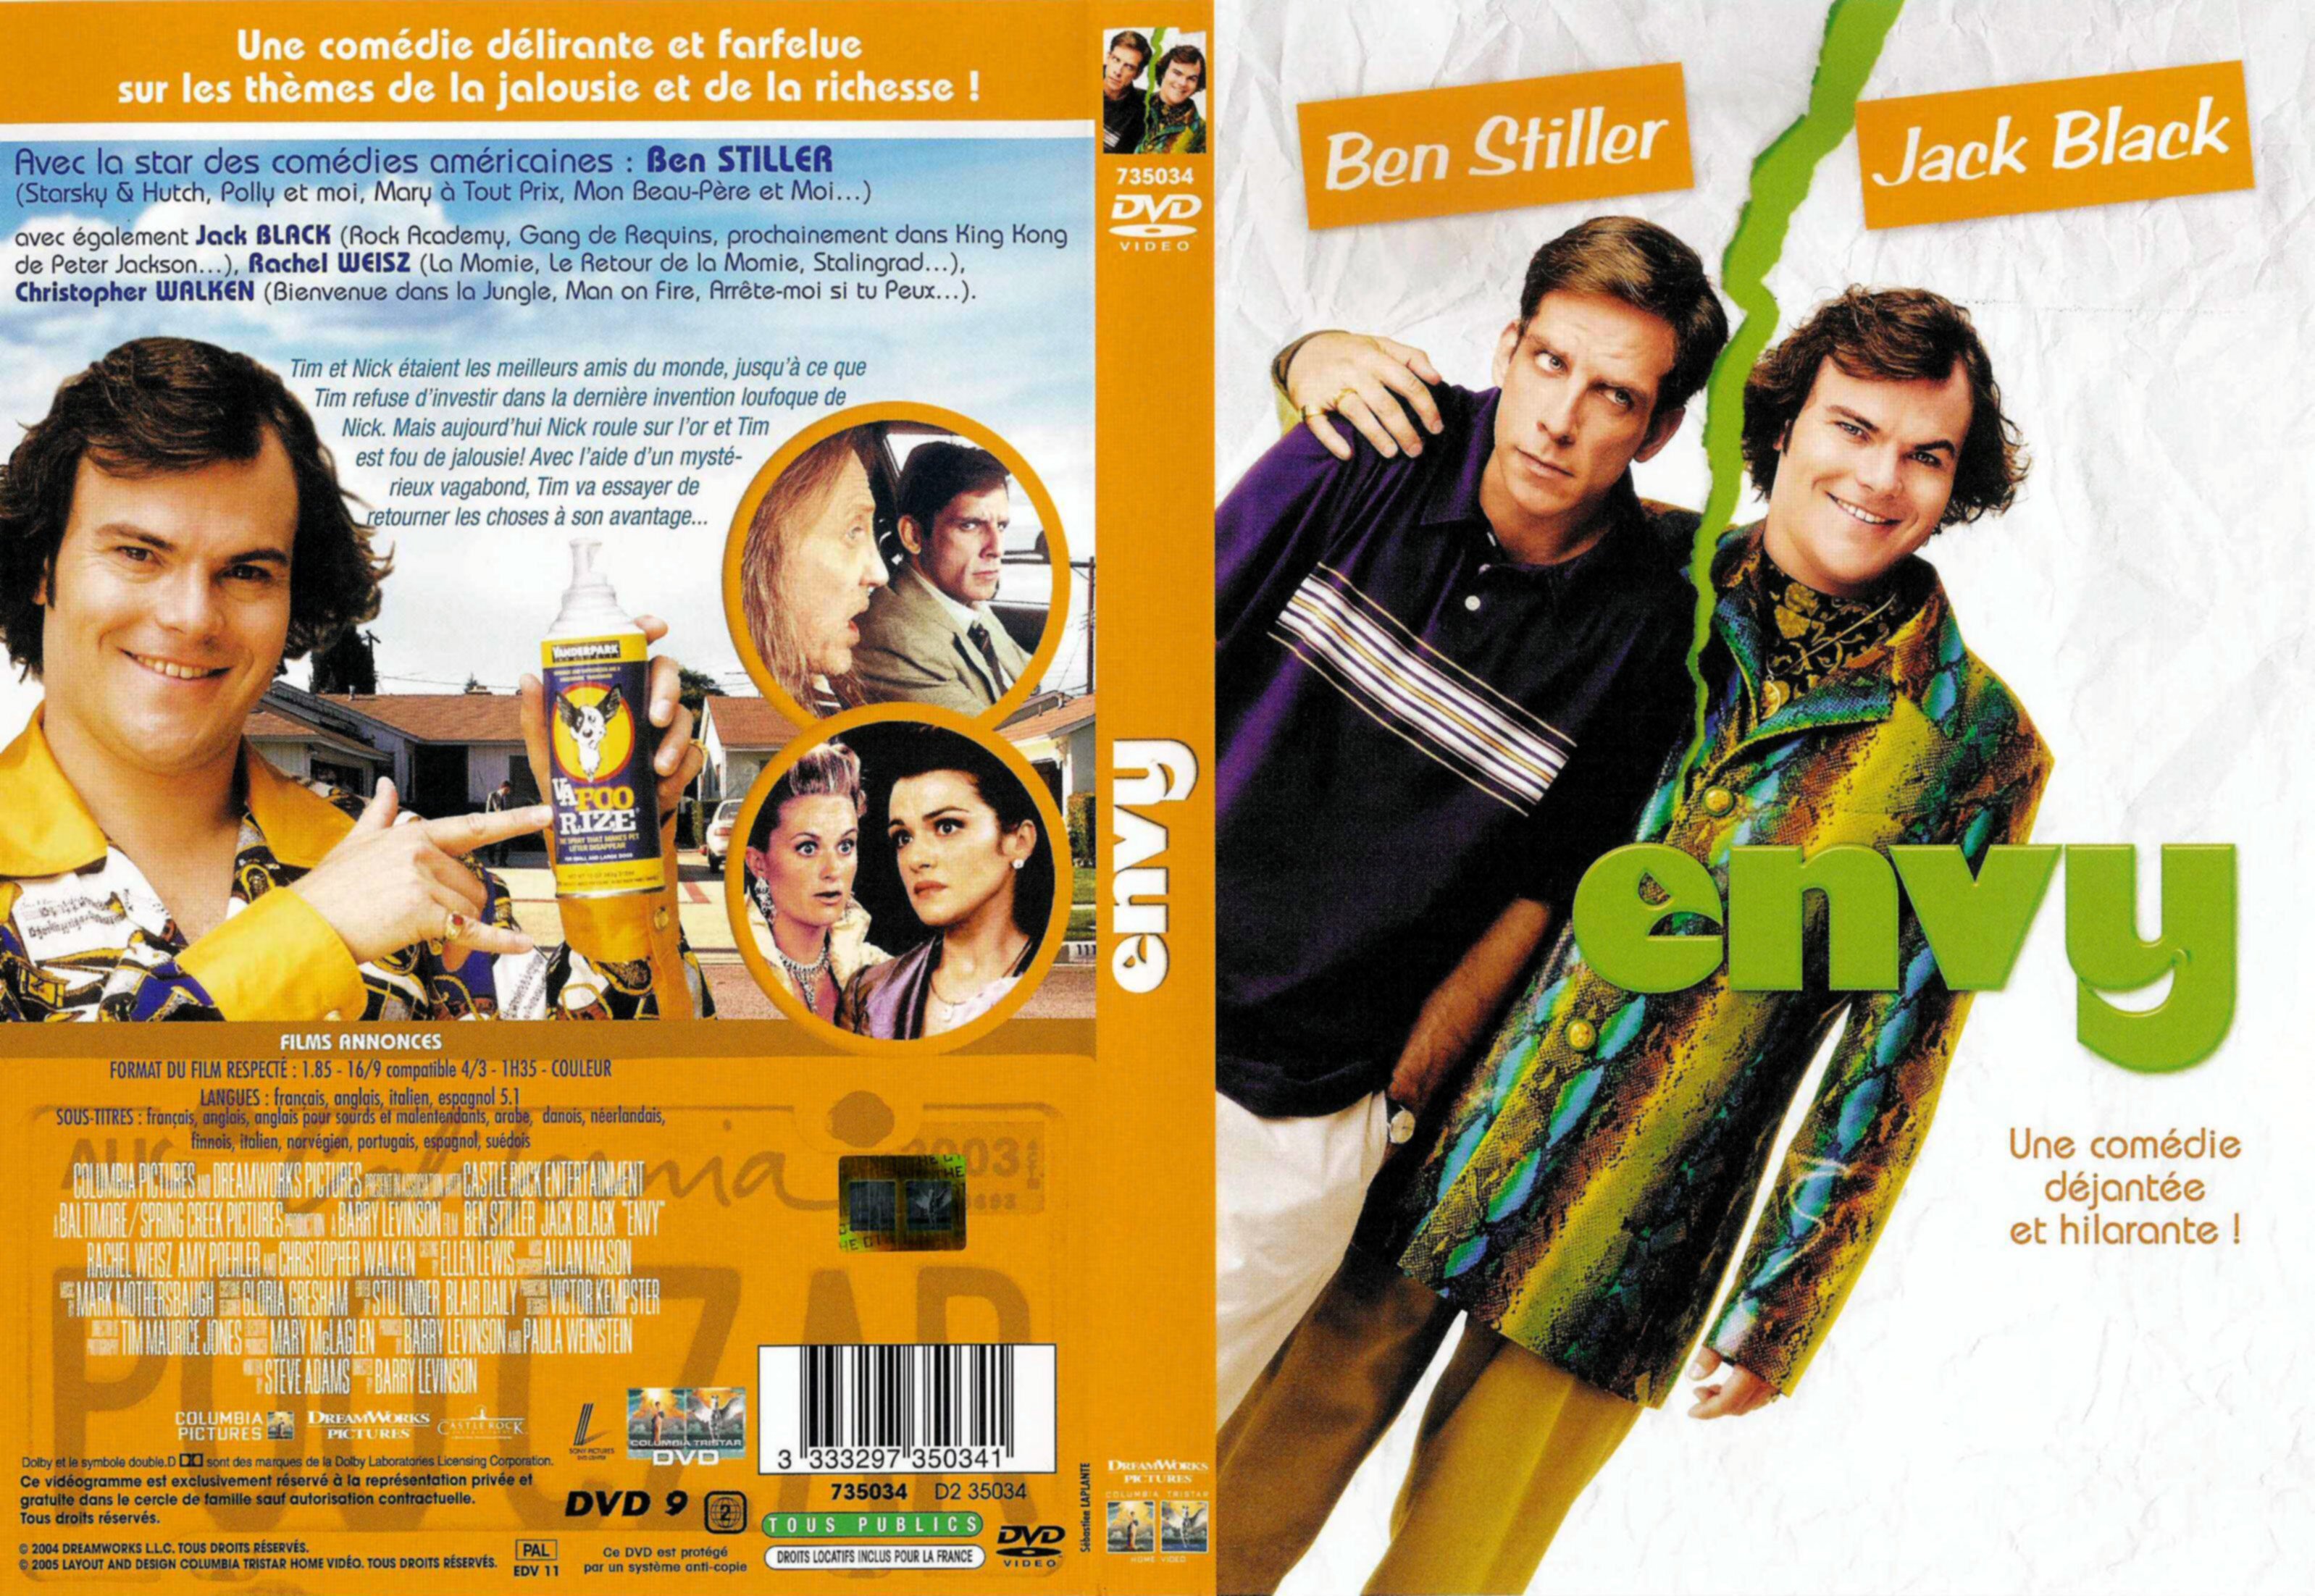 Jaquette DVD Envy v2